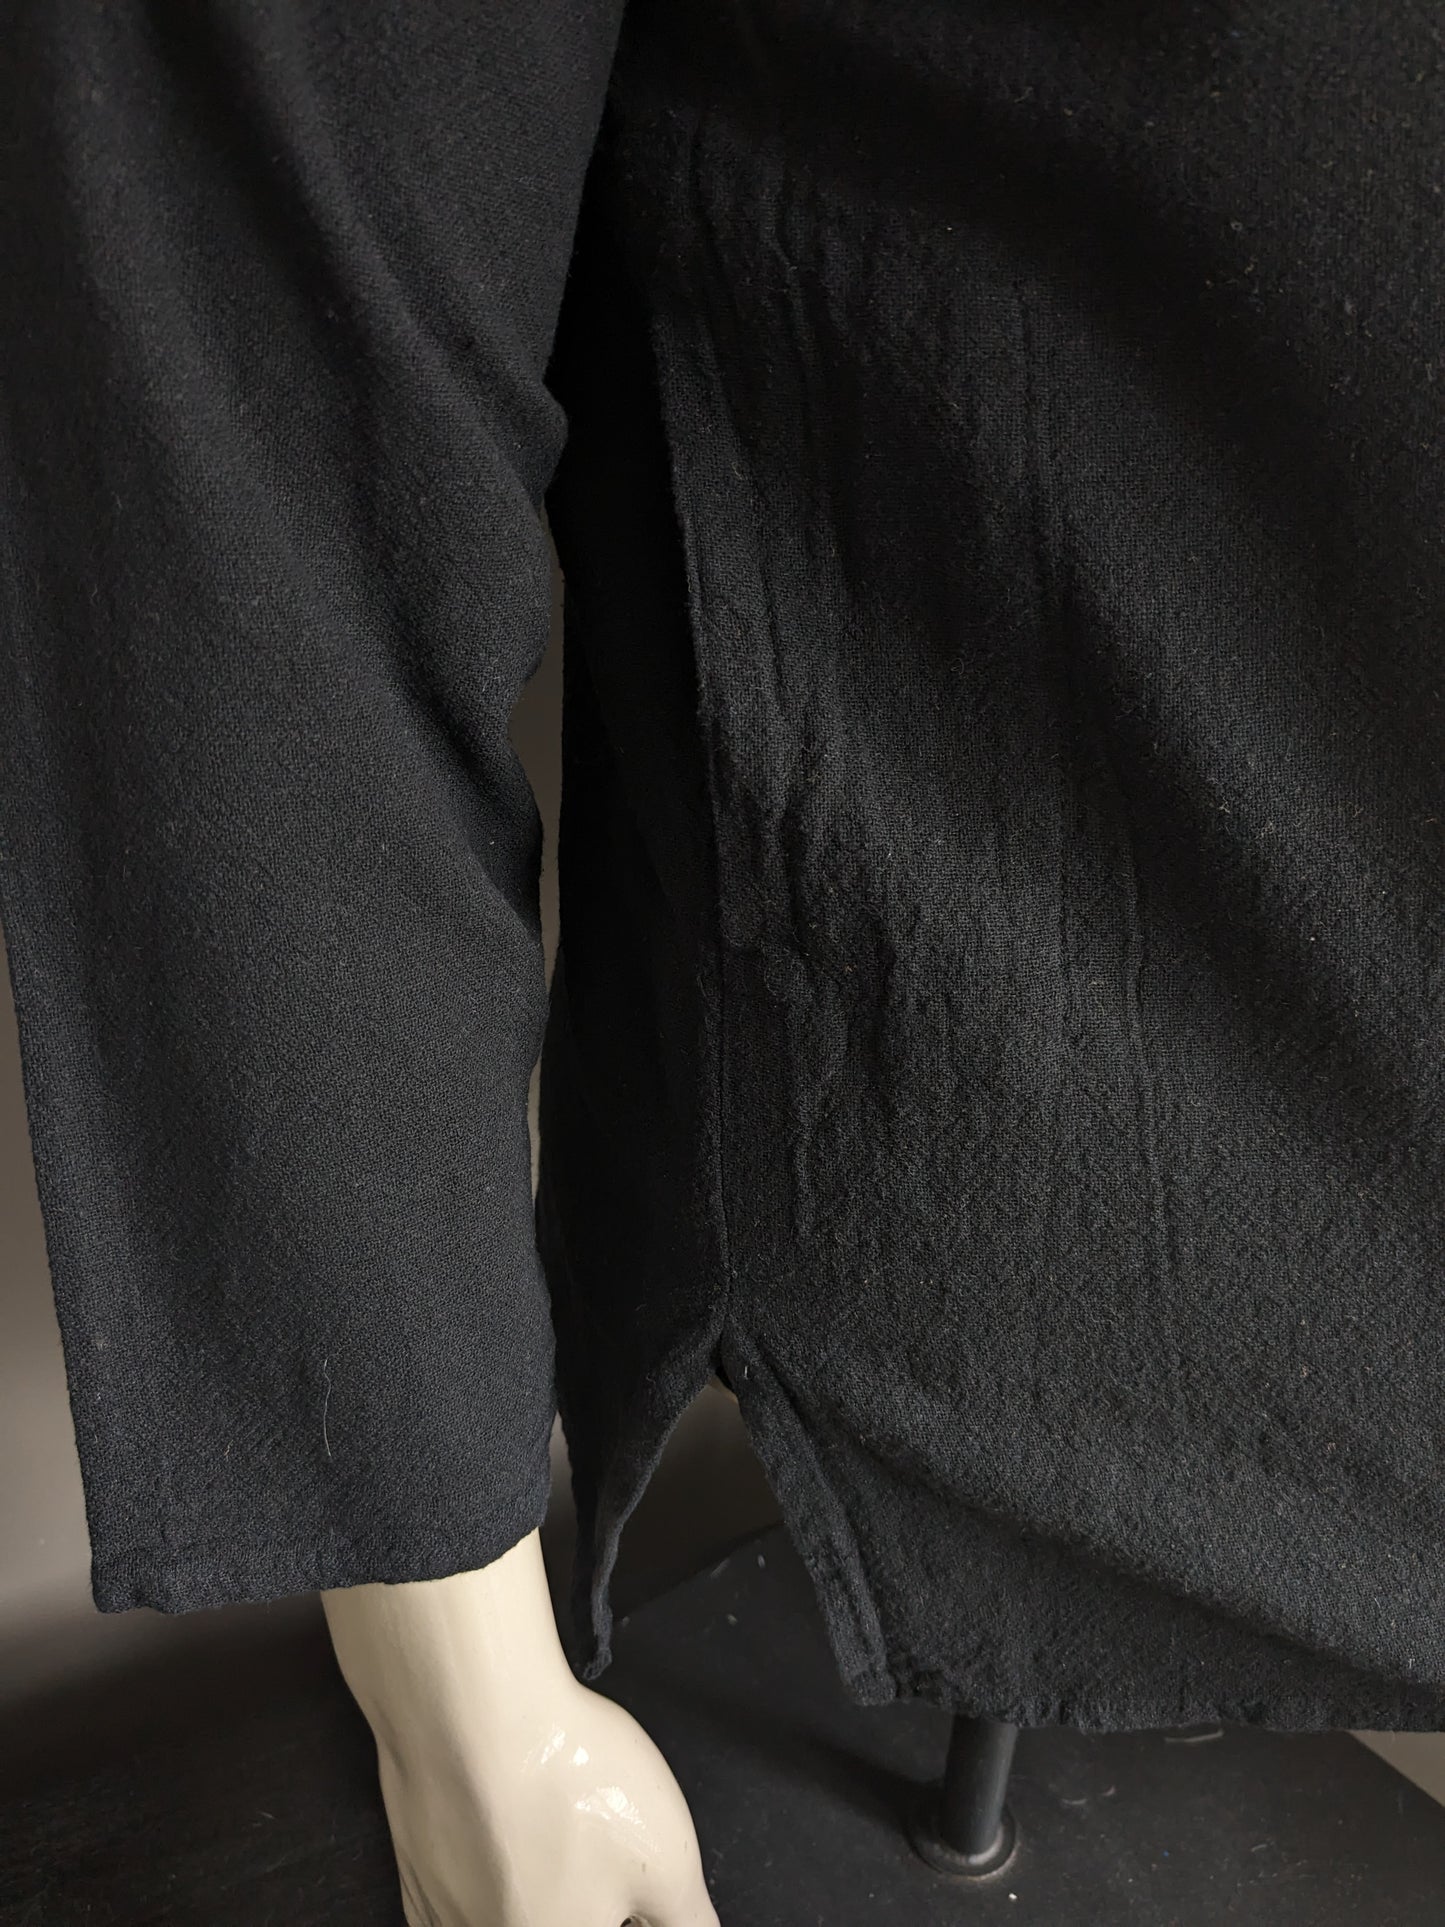 Camicia vintage con 1 borsa e mao / agricoltori / collare verticale. Colorato nero. Taglia M.